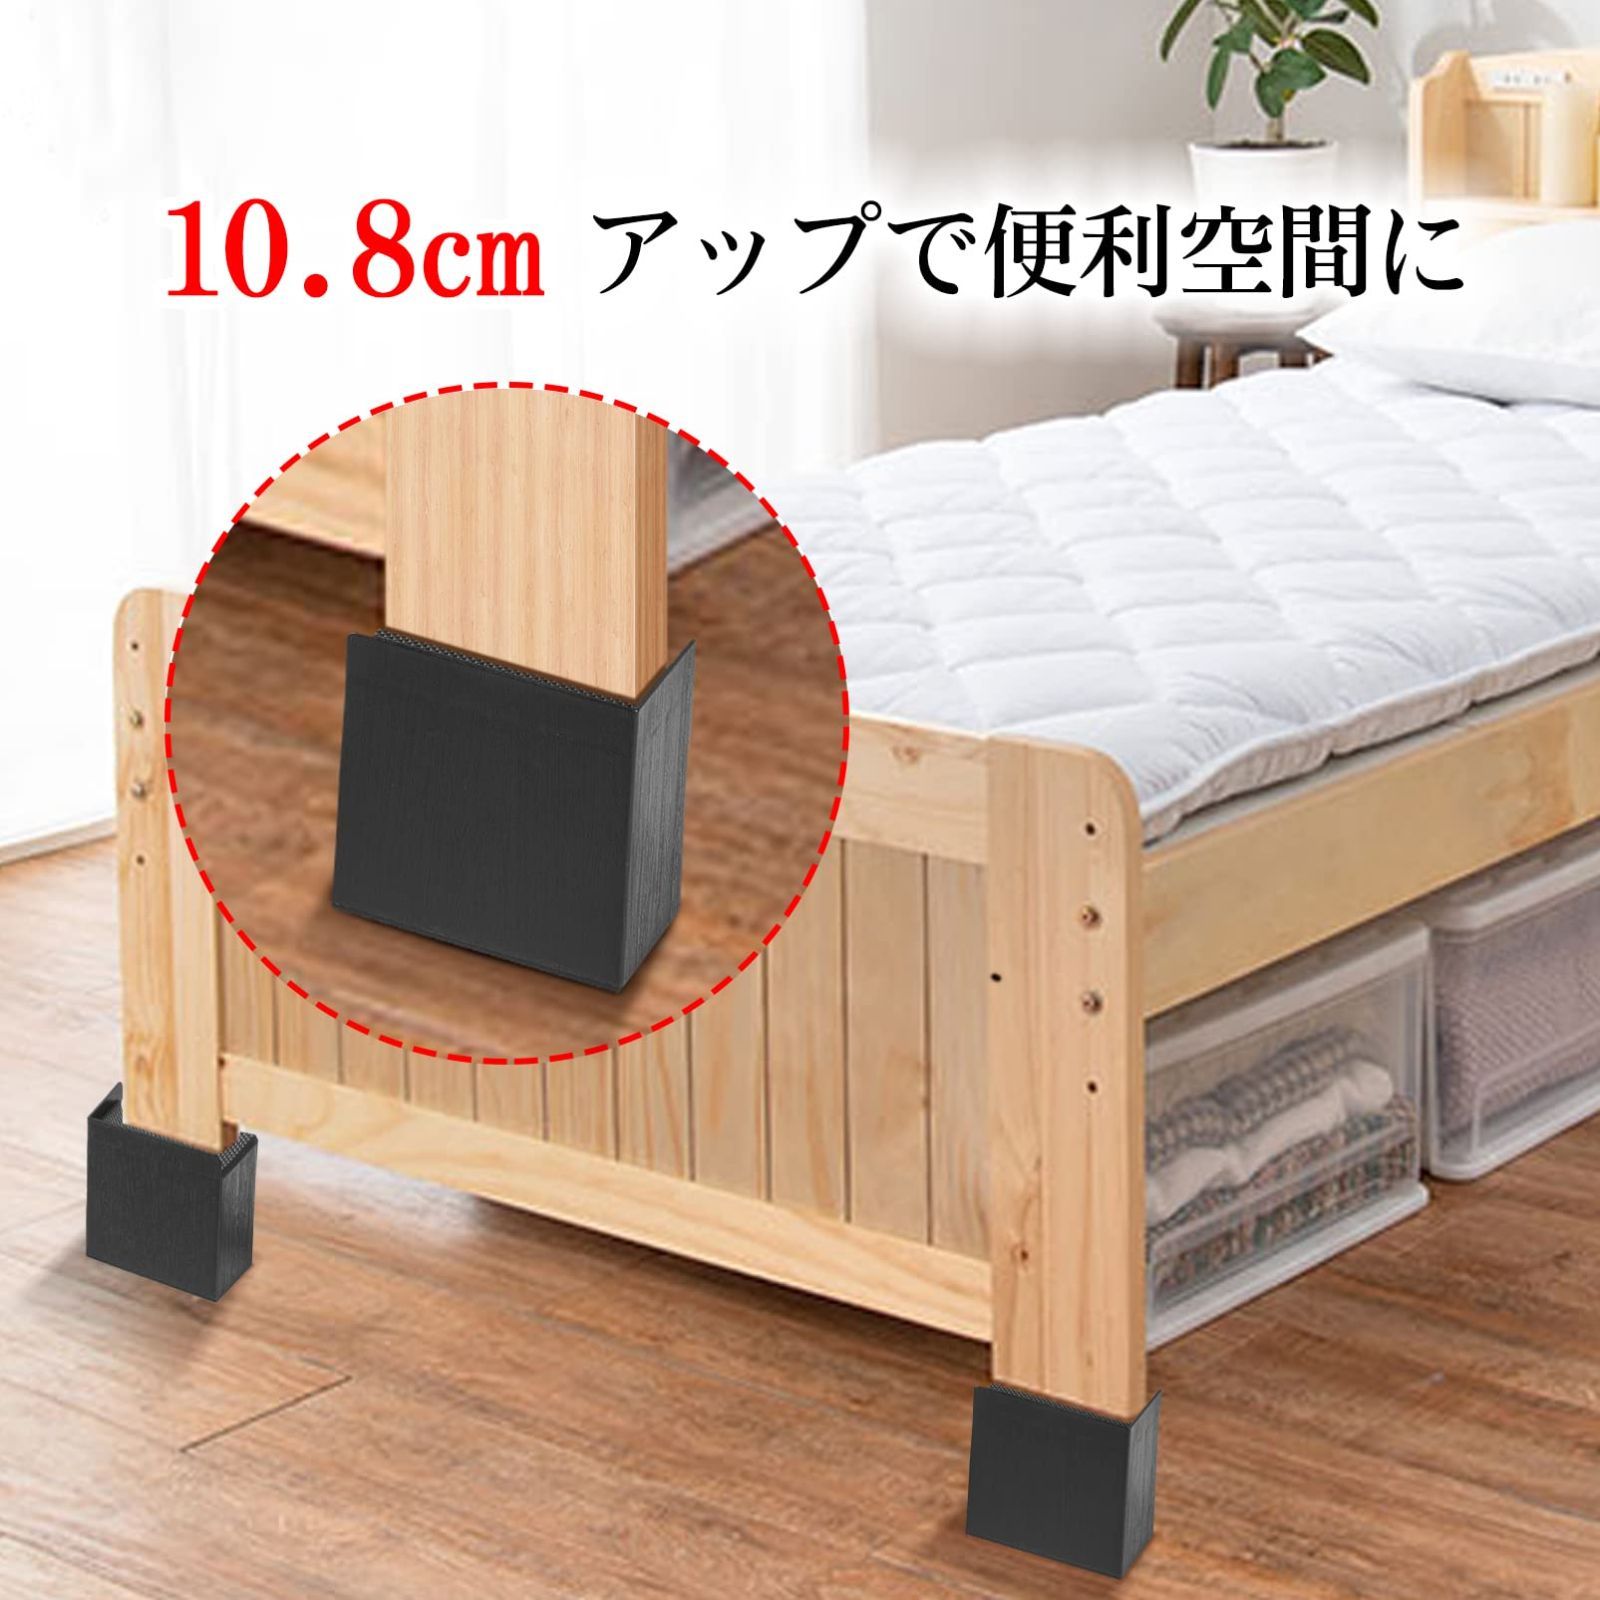 購買 Uping テーブル ベッドの高さ調節が簡単にできる ベッドの高さをあげる足 4個セ